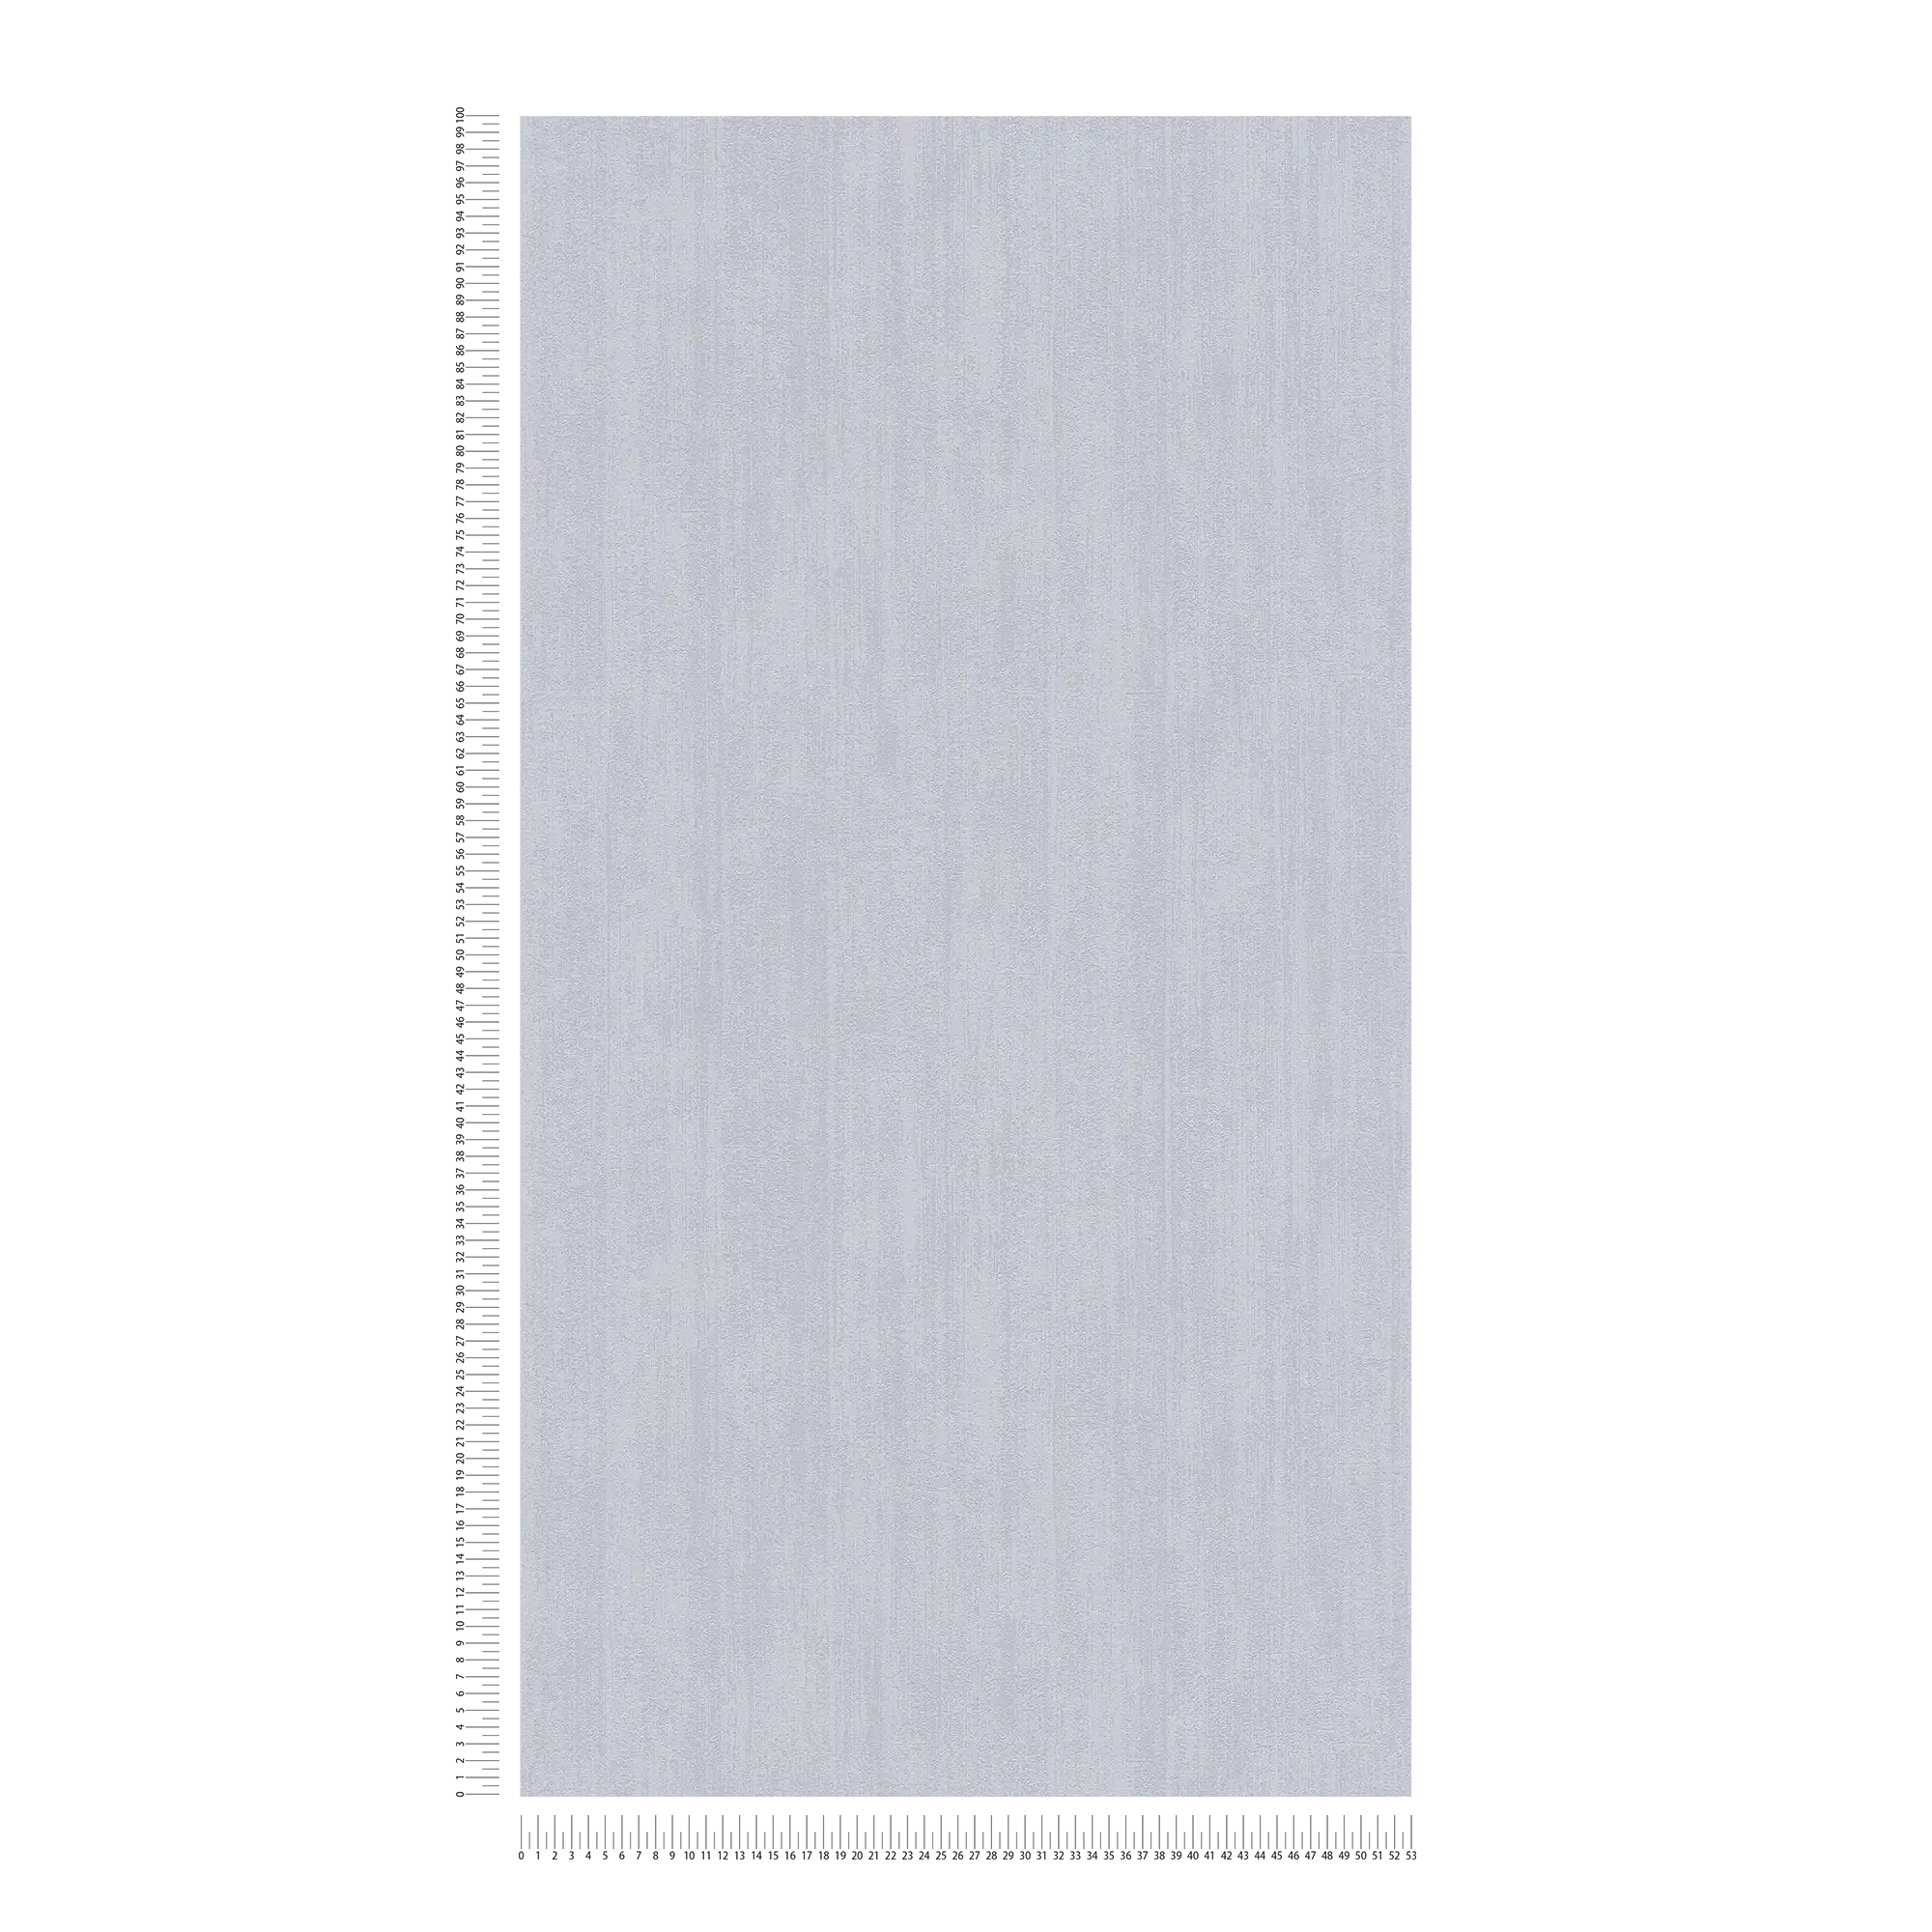             Papel pintado liso no tejido con sombreado tono sobre tono - gris
        